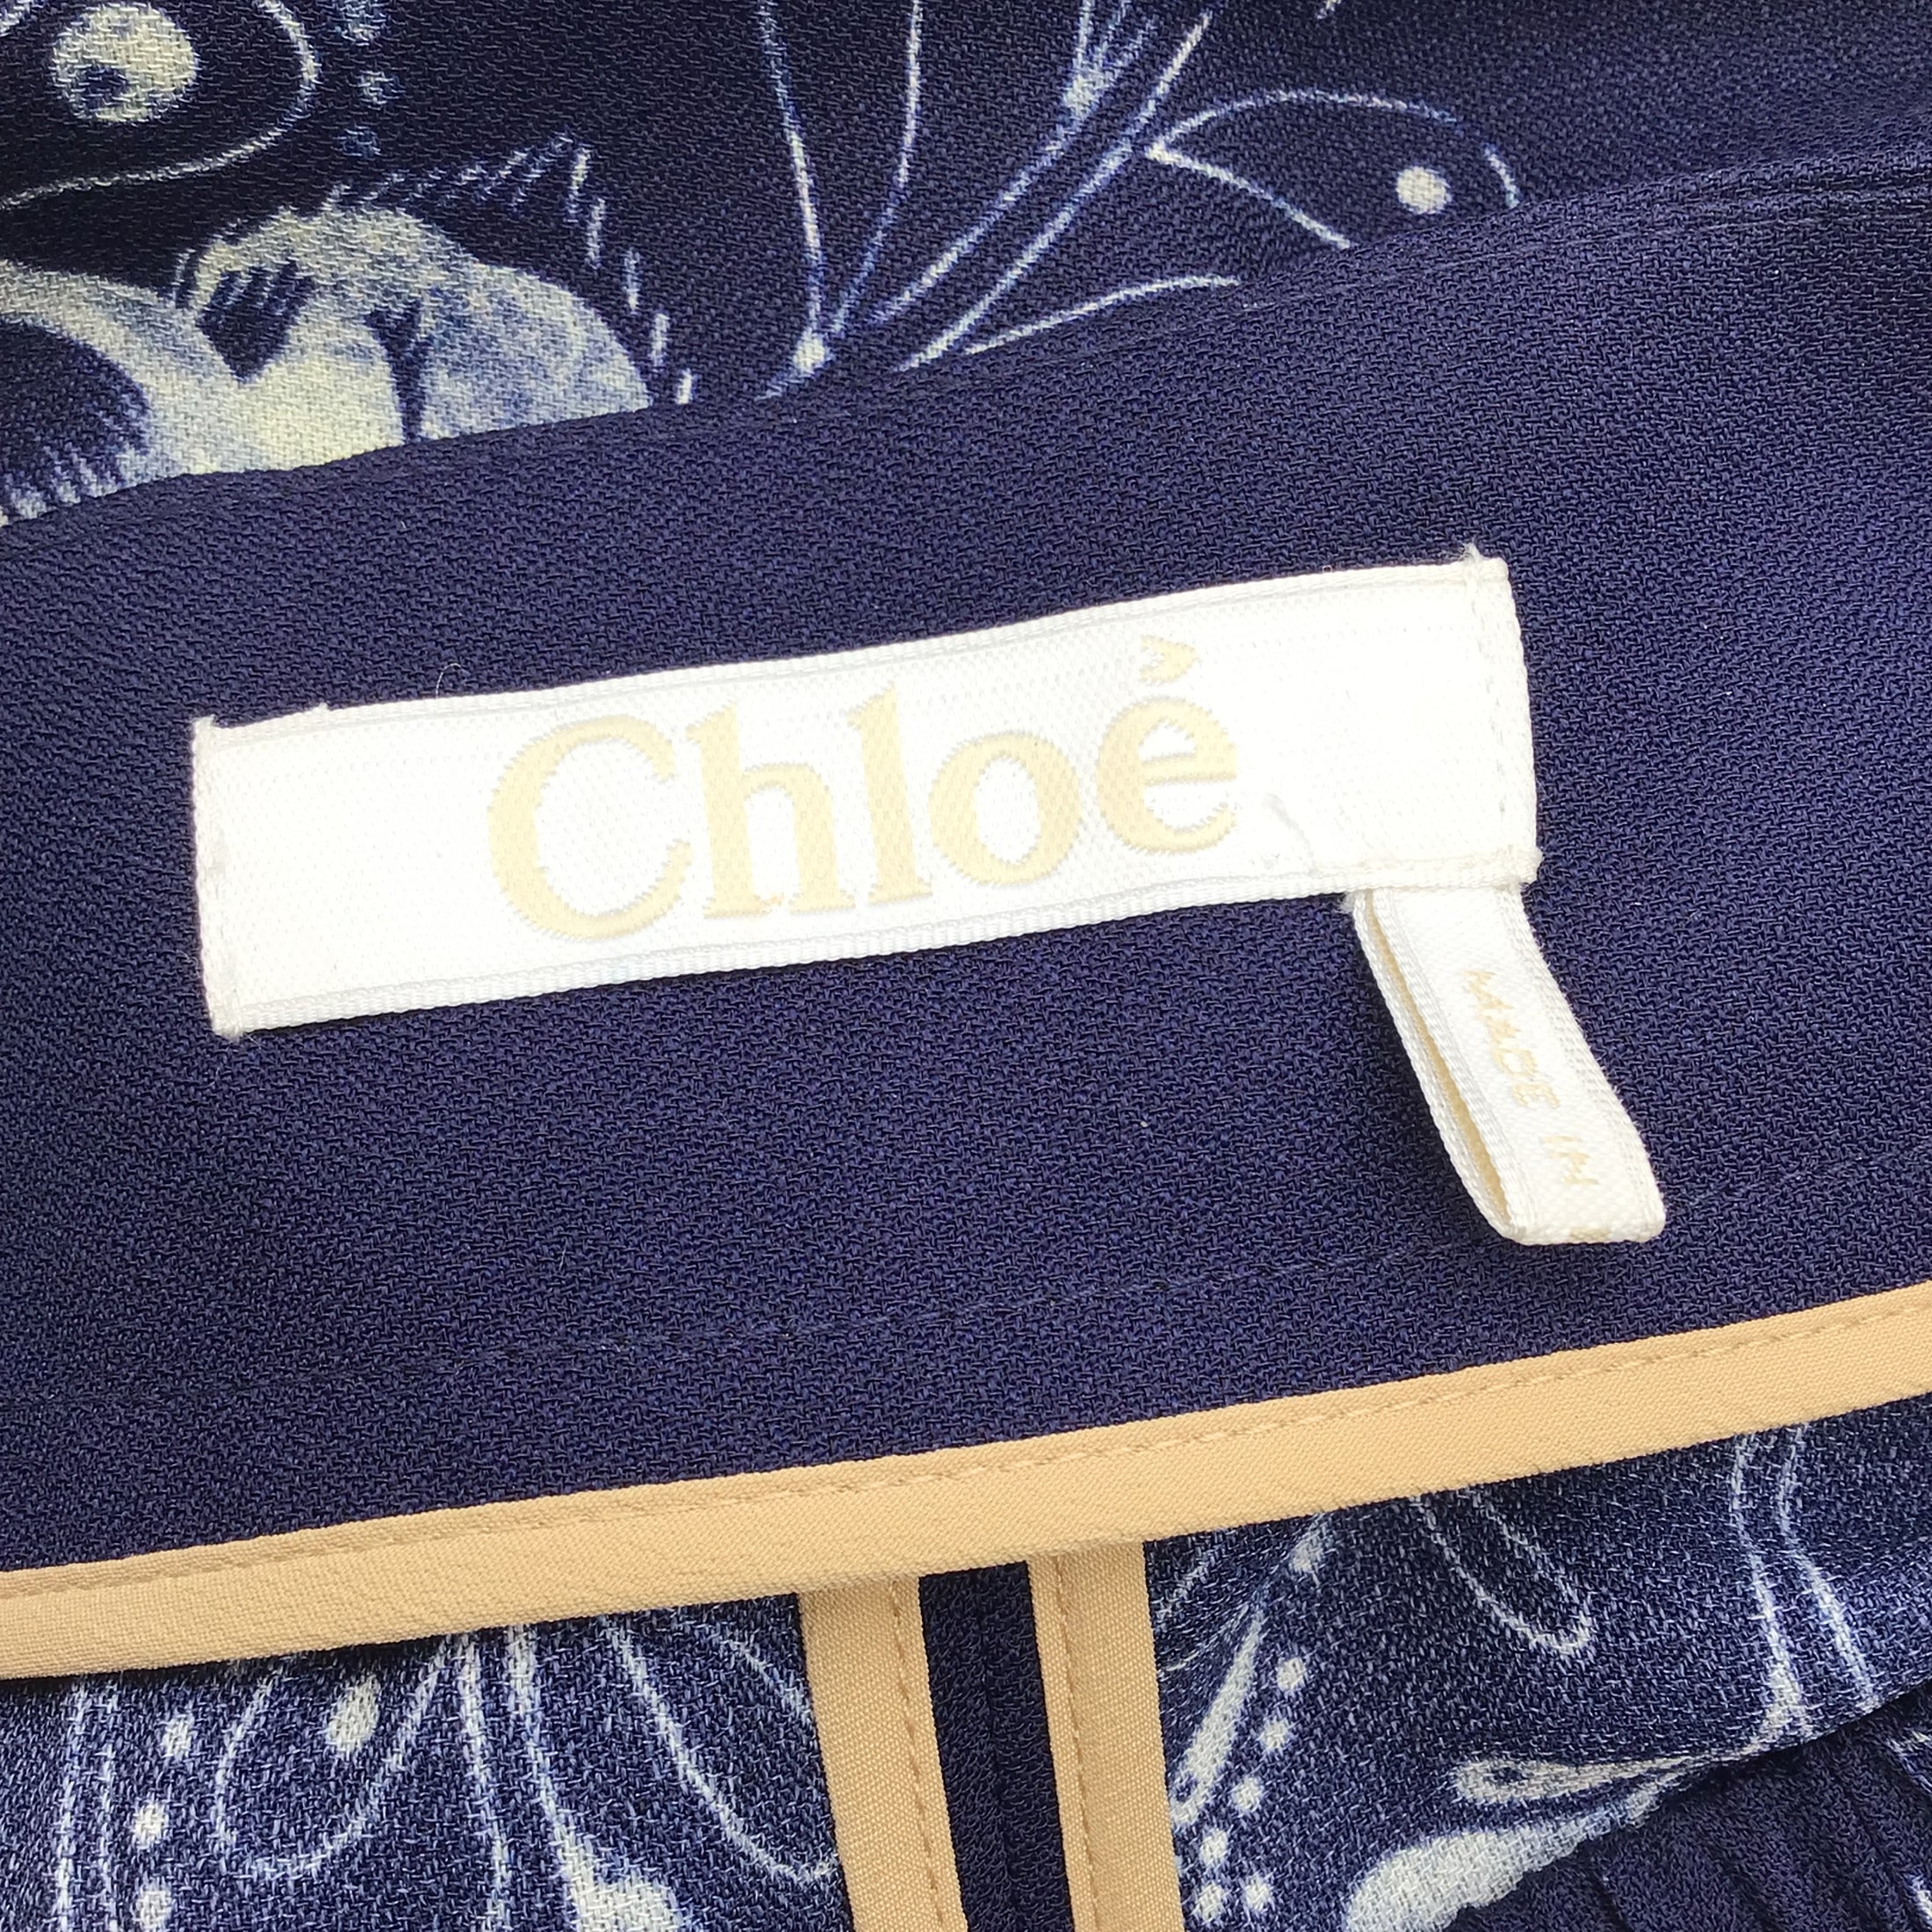 Chloe Blue / Beige Floral Printed Crepe Pants